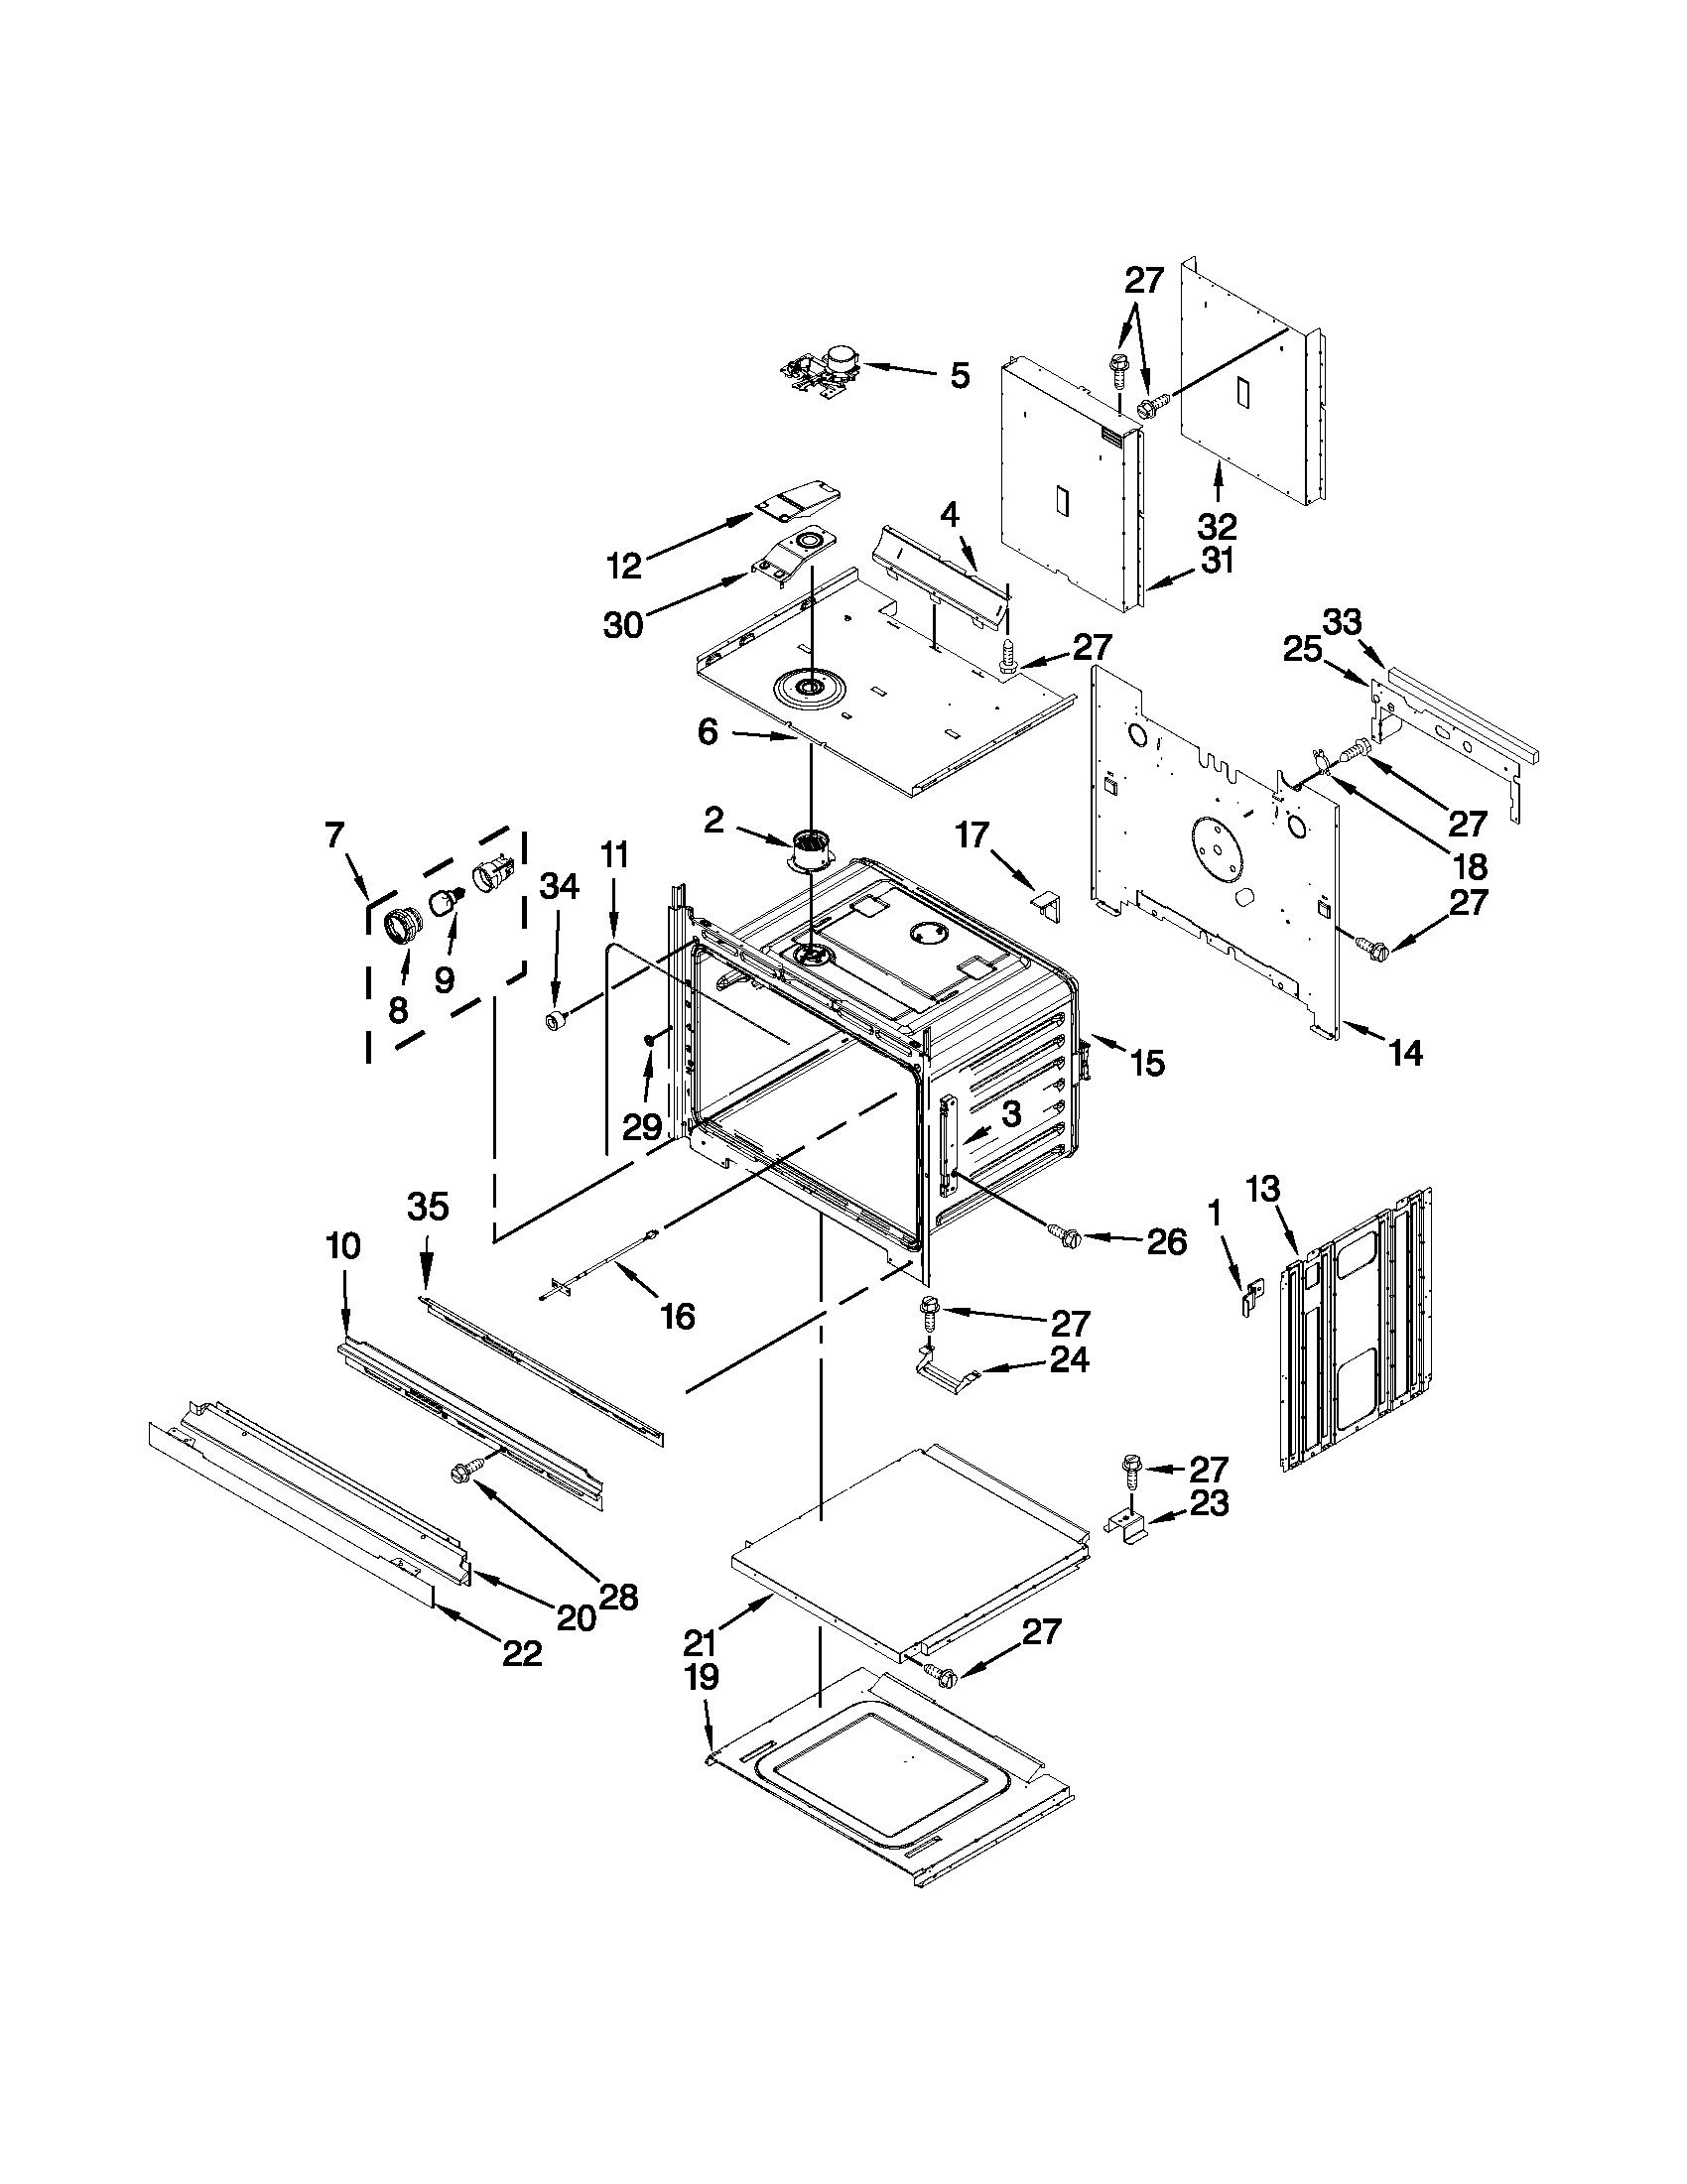 31 Suzuki Eiger Parts Diagram